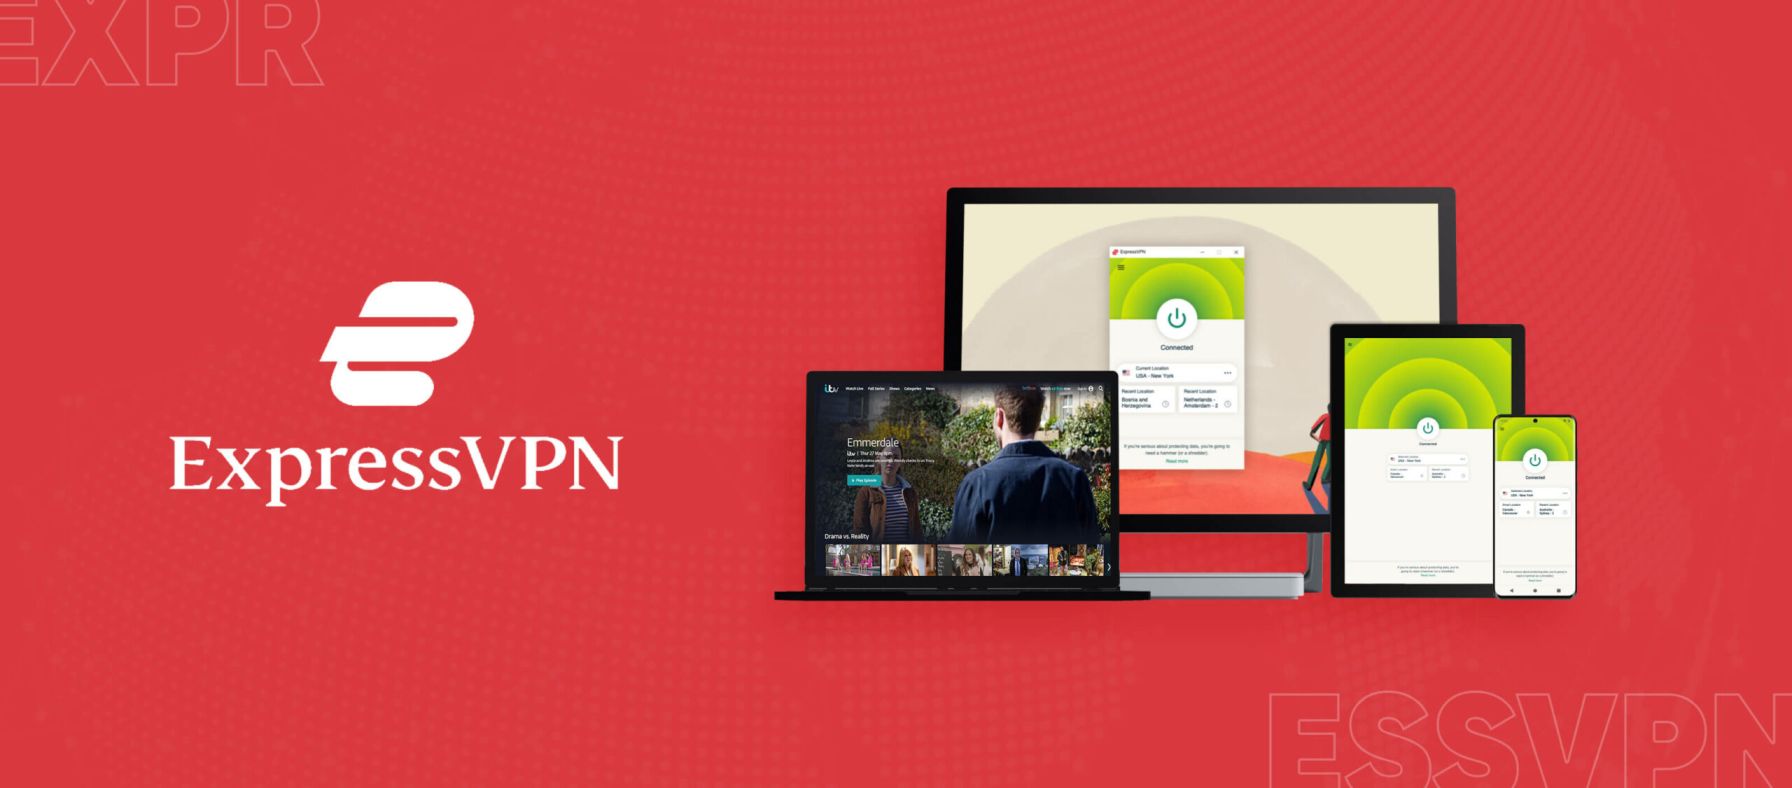  ExpressVPN-ITV è un servizio di rete privata virtuale (VPN) che consente agli utenti di accedere a contenuti geograficamente limitati su ITV, una rete televisiva britannica. Con ExpressVPN-ITV, gli utenti possono bypassare le restrizioni geografiche e accedere a programmi e contenuti su ITV da qualsiasi parte del mondo. Il servizio offre una connessione sicura e crittograf 